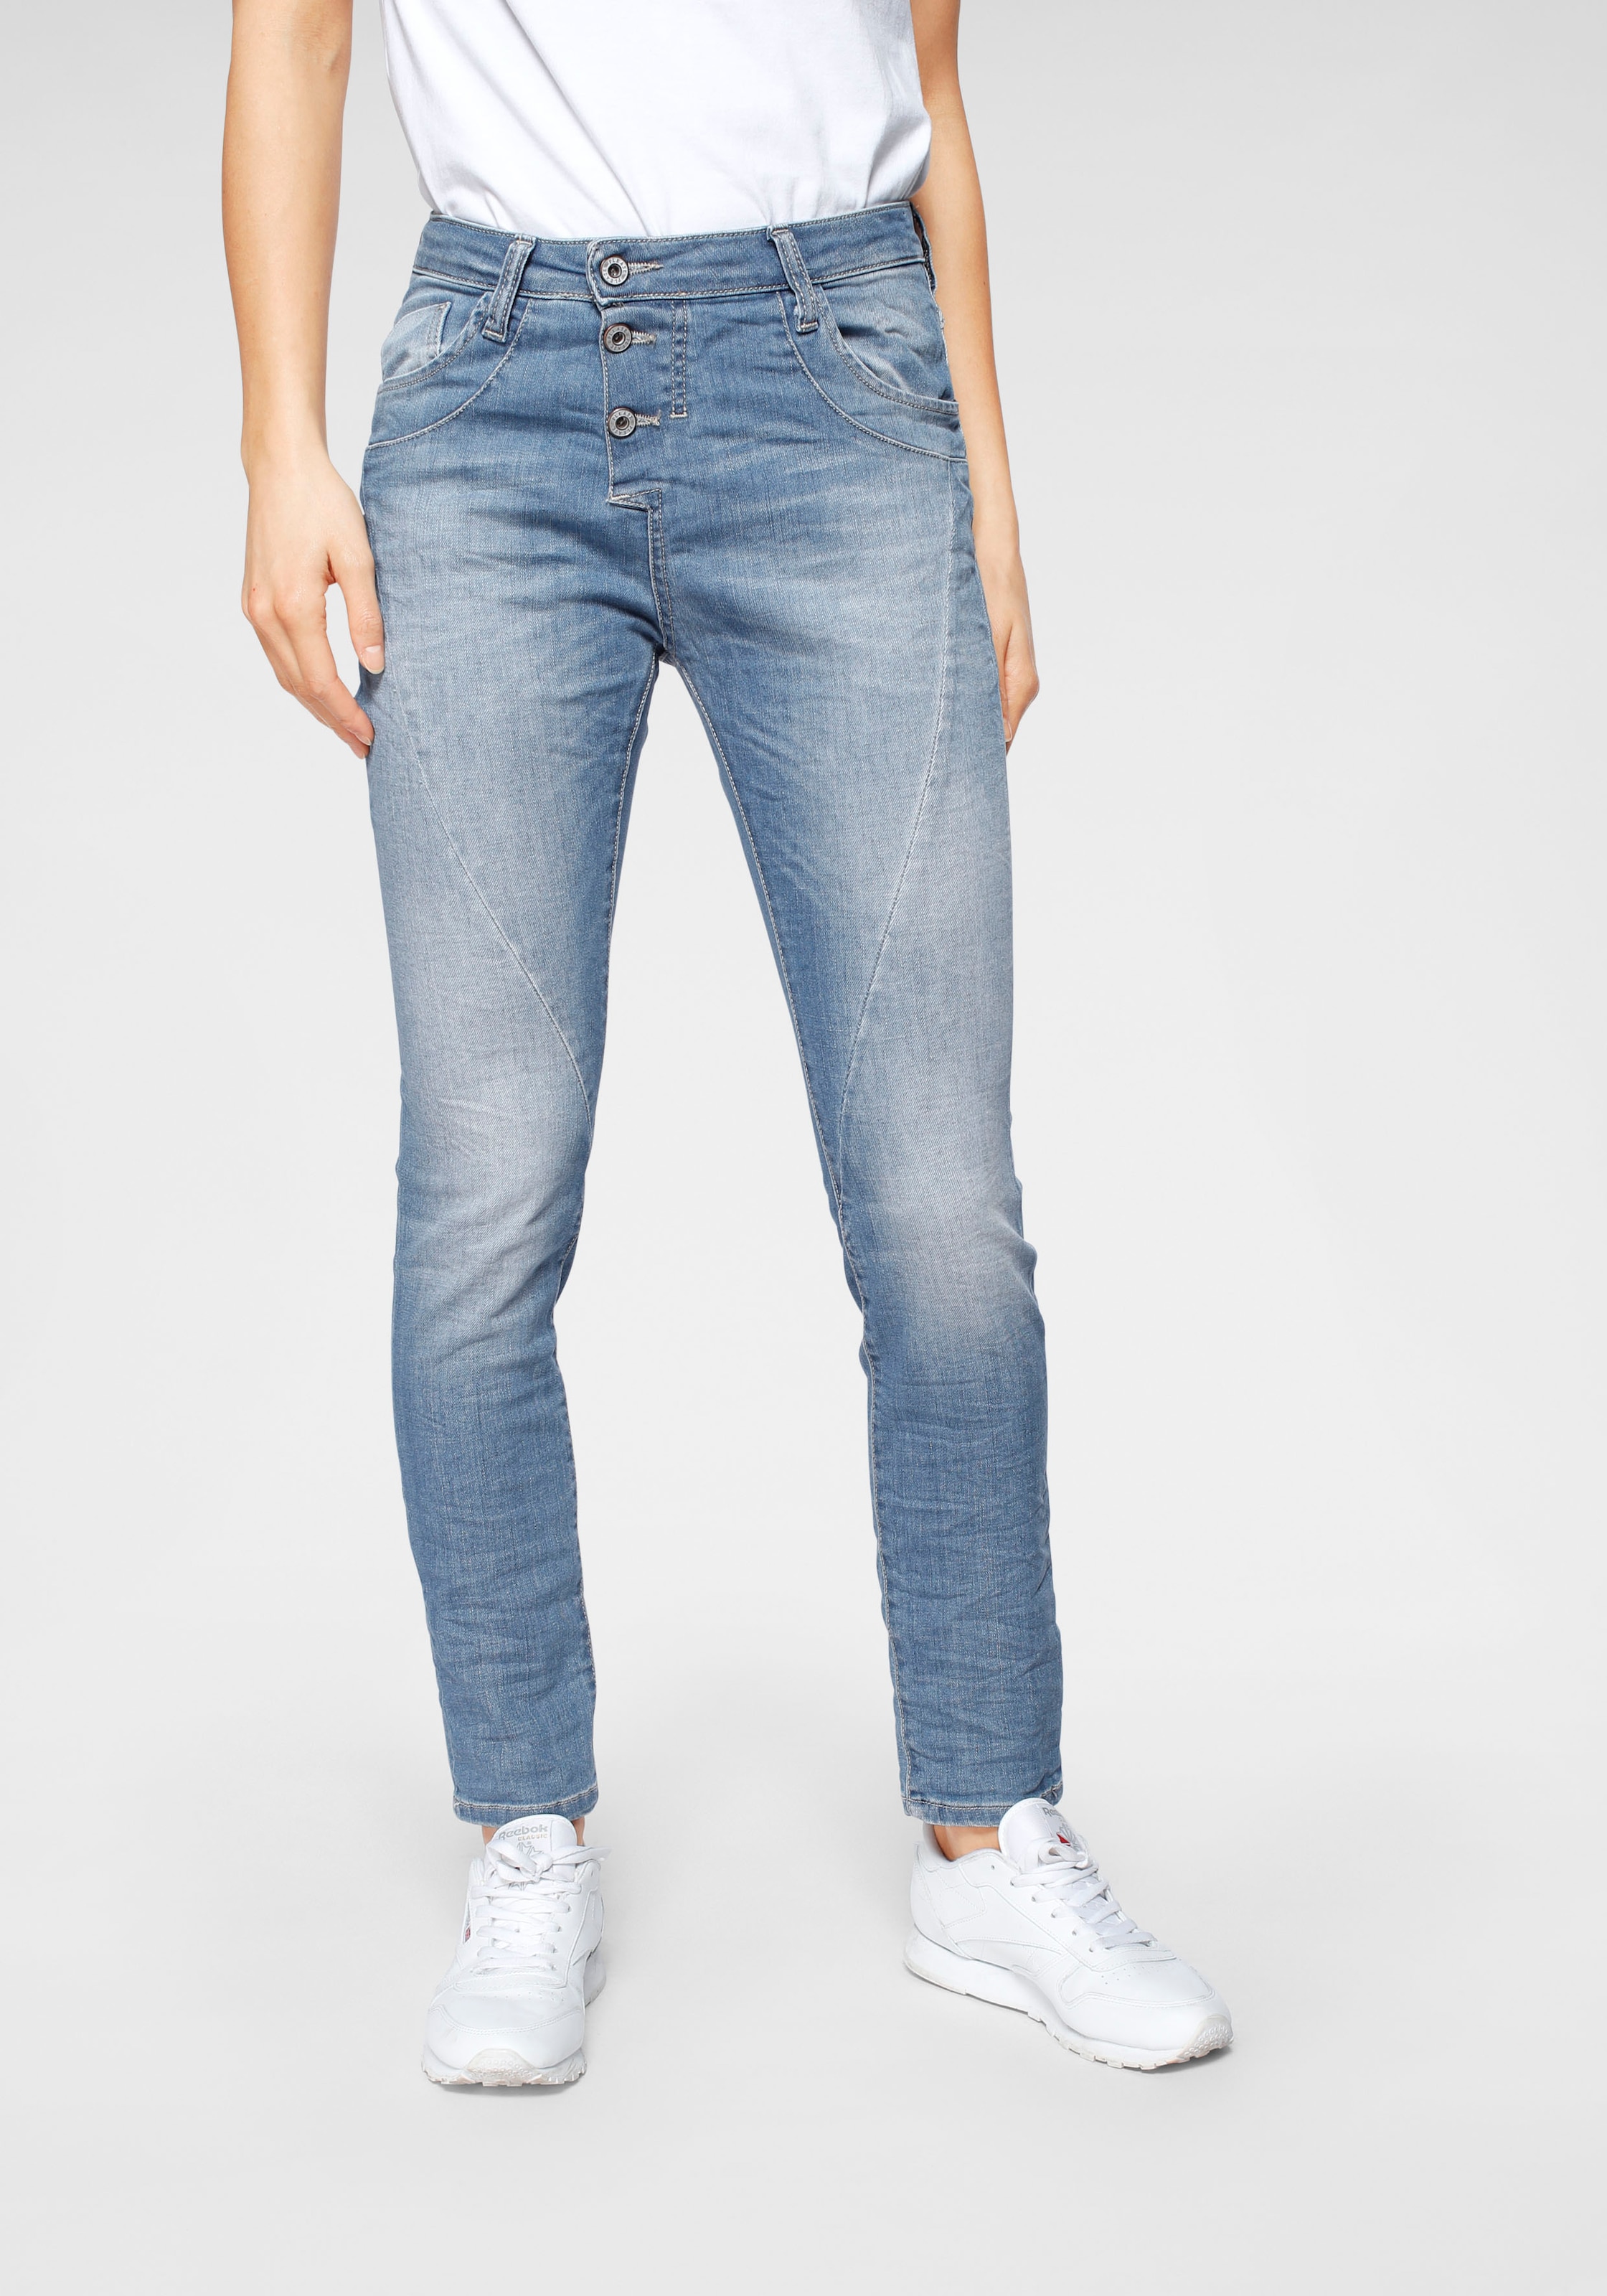 im Please ▷ BAUR Shop Damen für Jeans | Online Mode